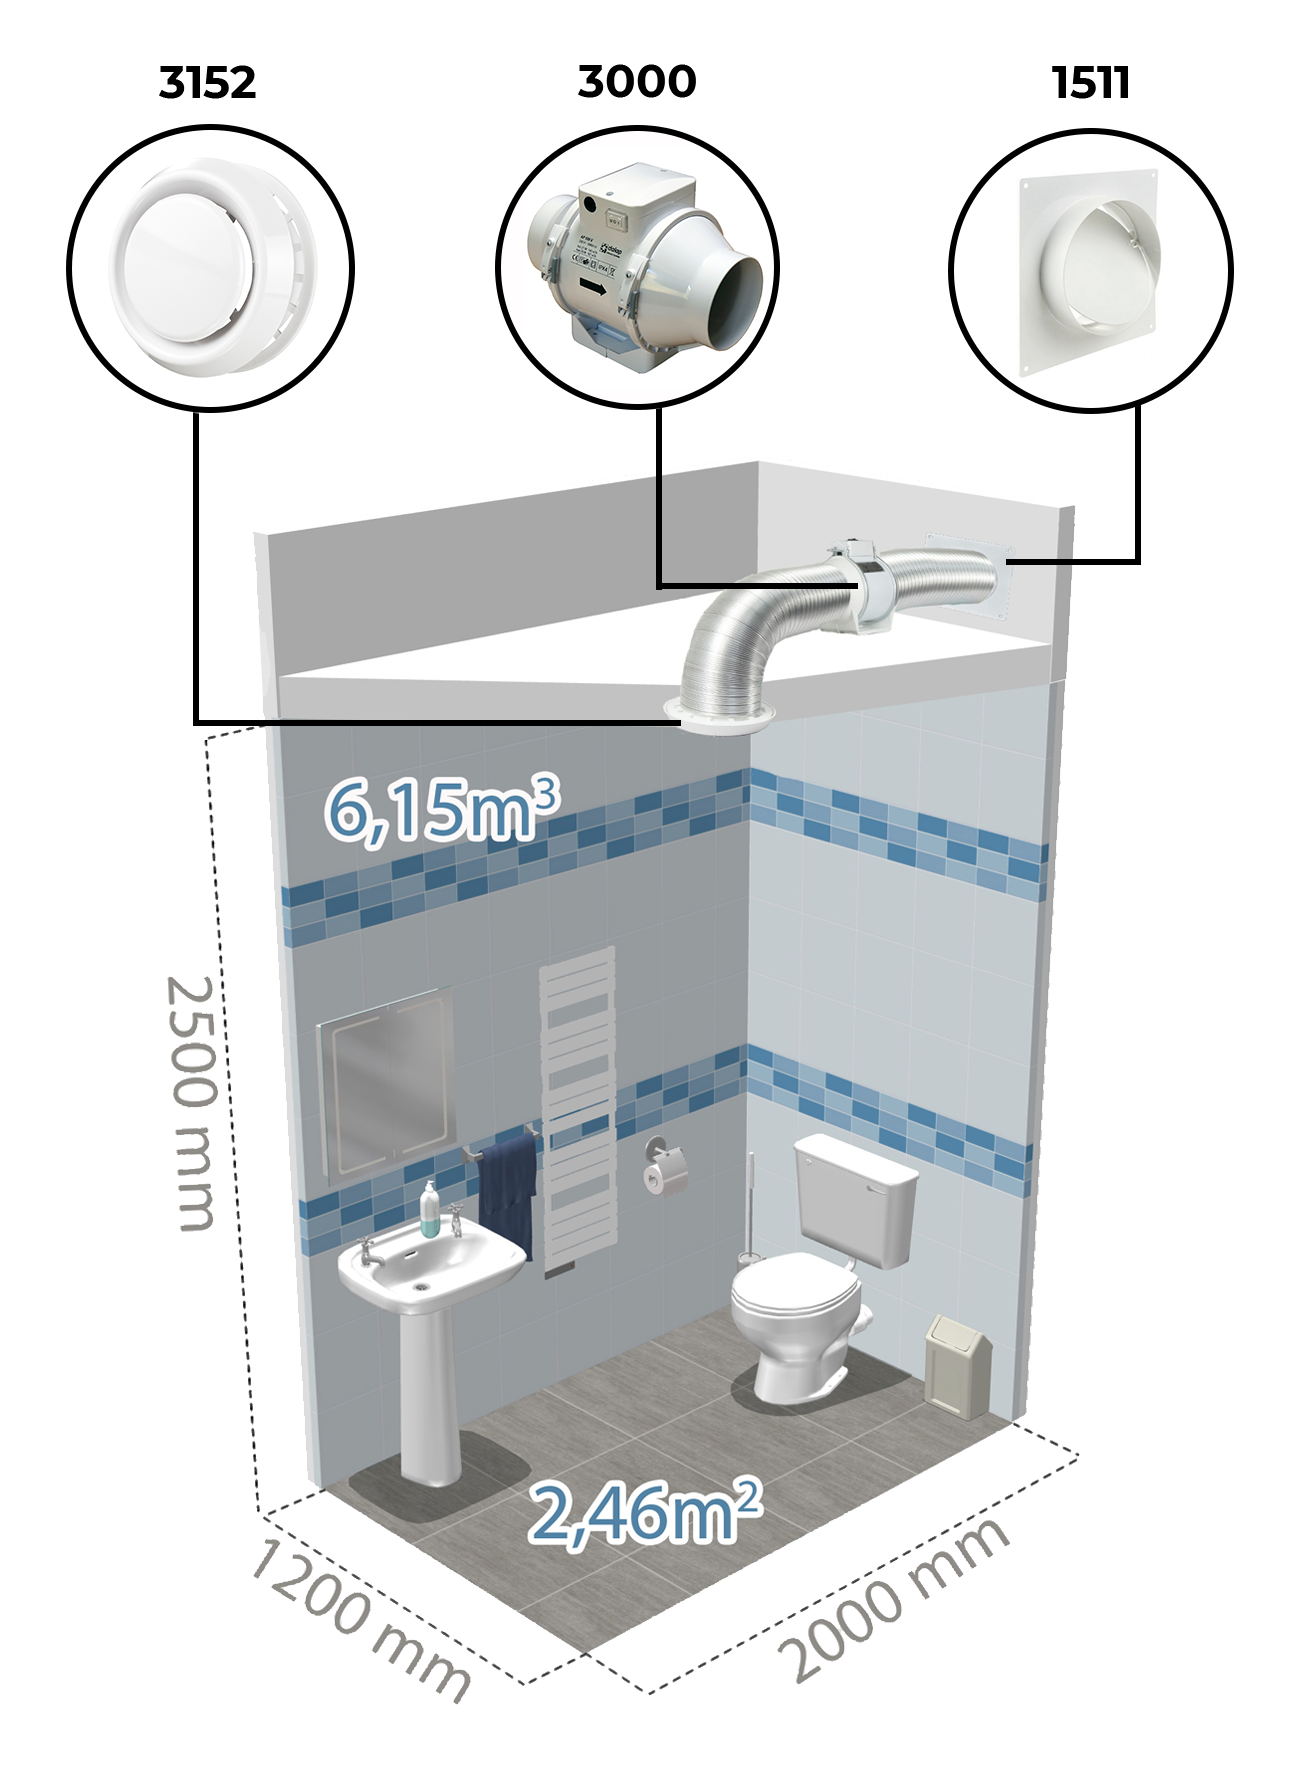 Príklad inštalácie vzduchotechniky na WC pomocou potrubného ventilátora Dalap AP